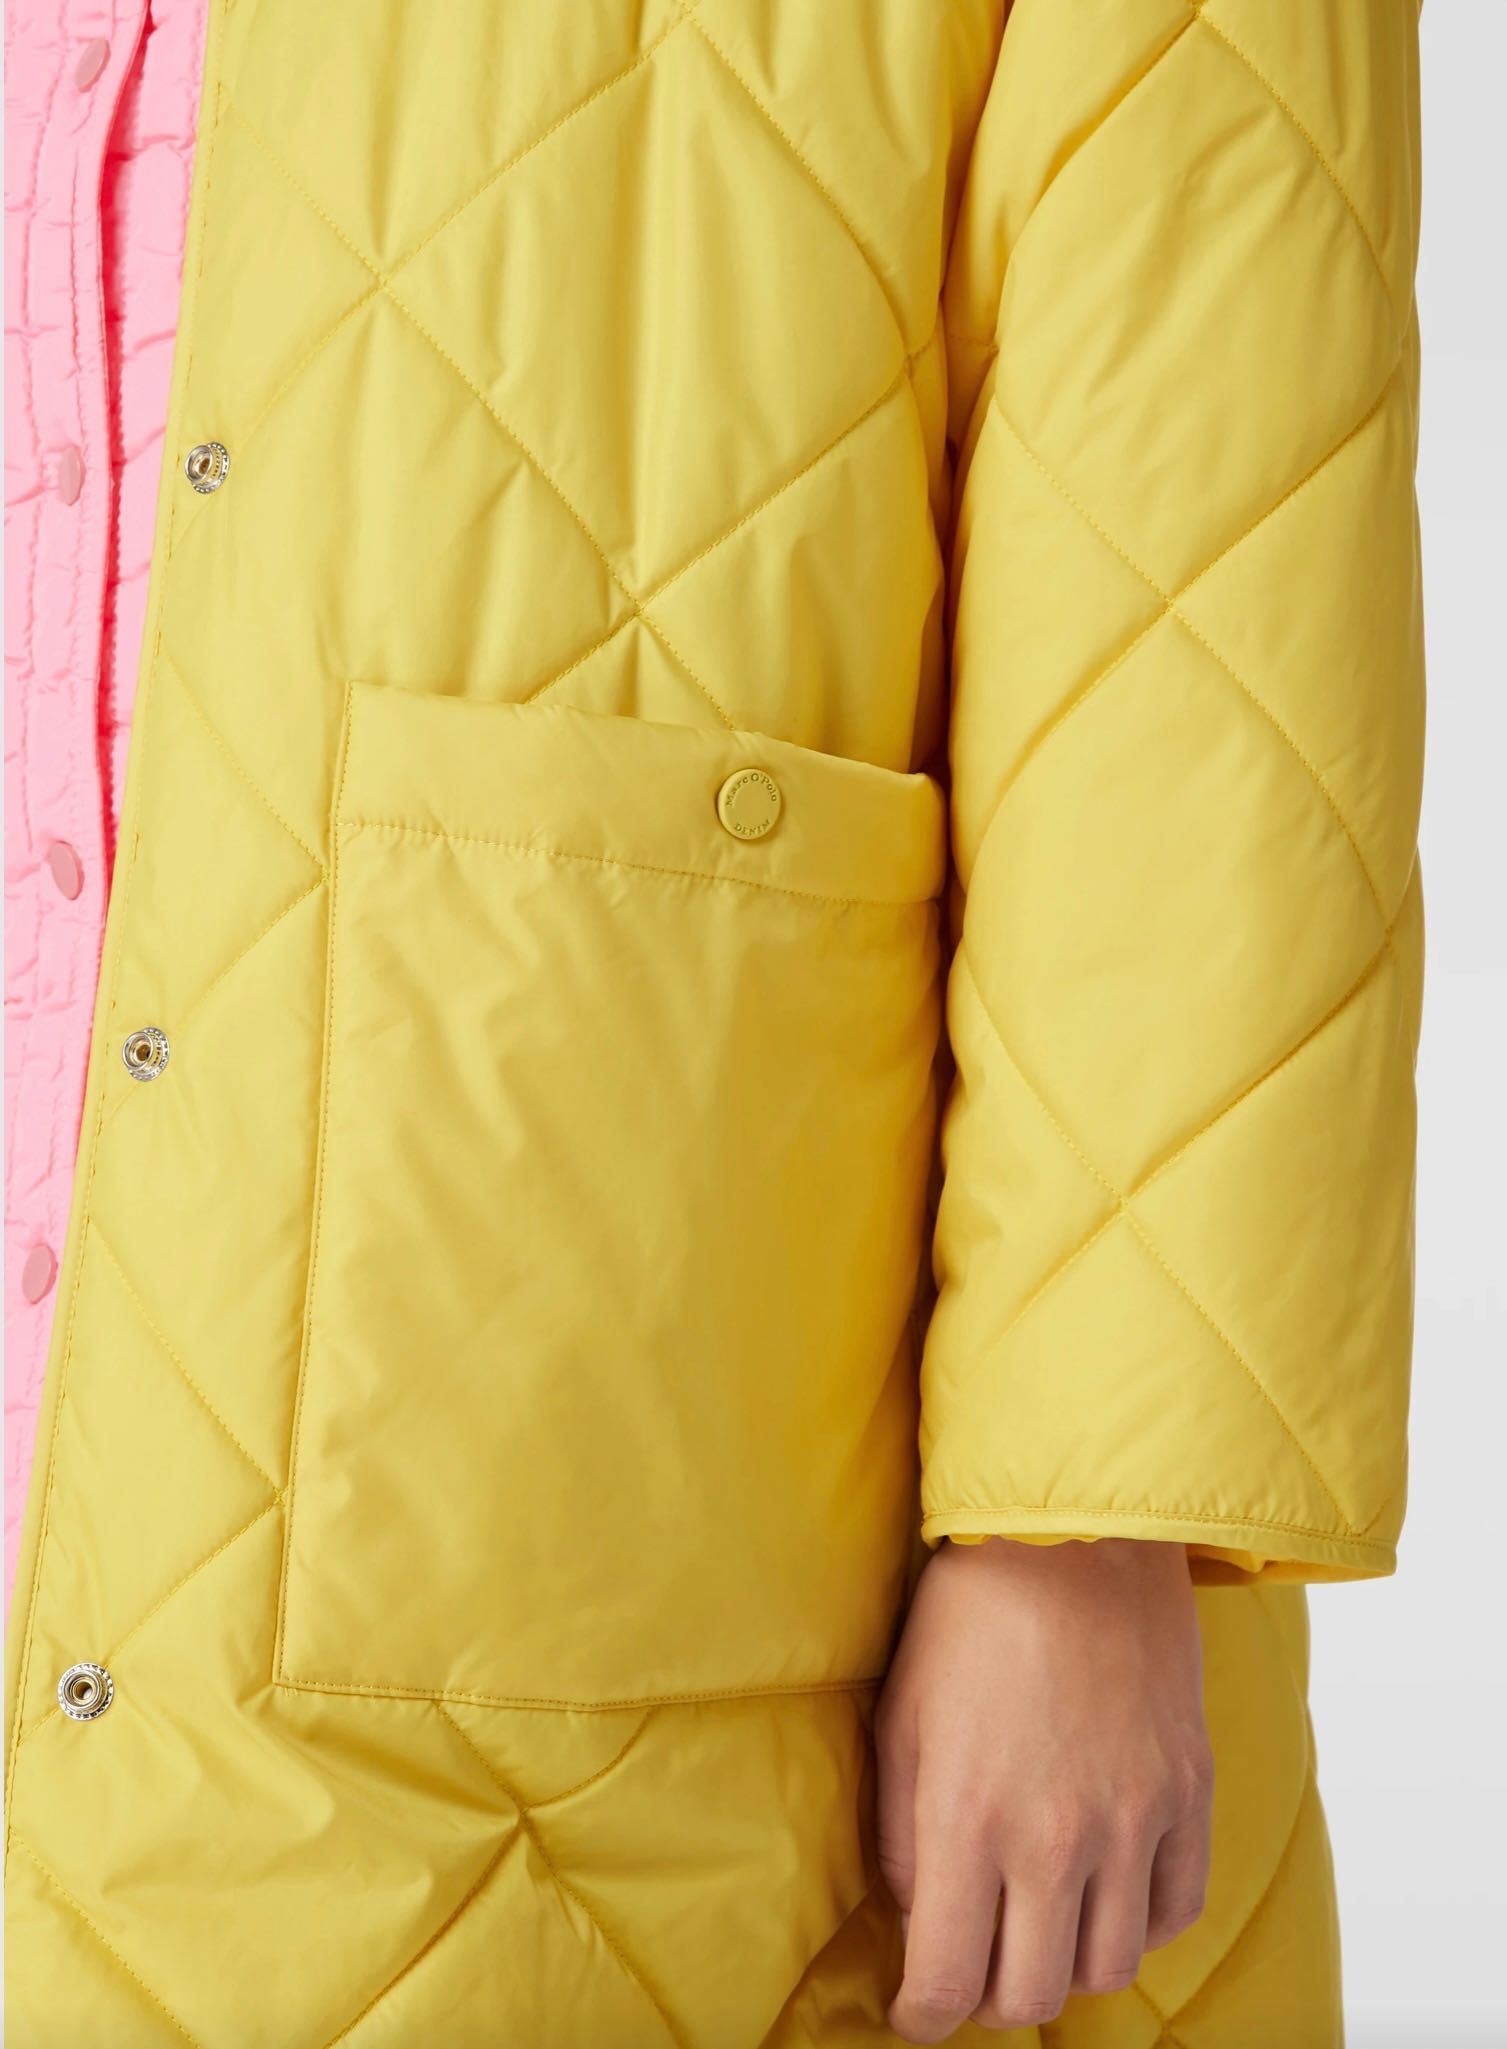 Płaszcz puchowy kurtka Marc’o Polo Denim żółty rozmiar M